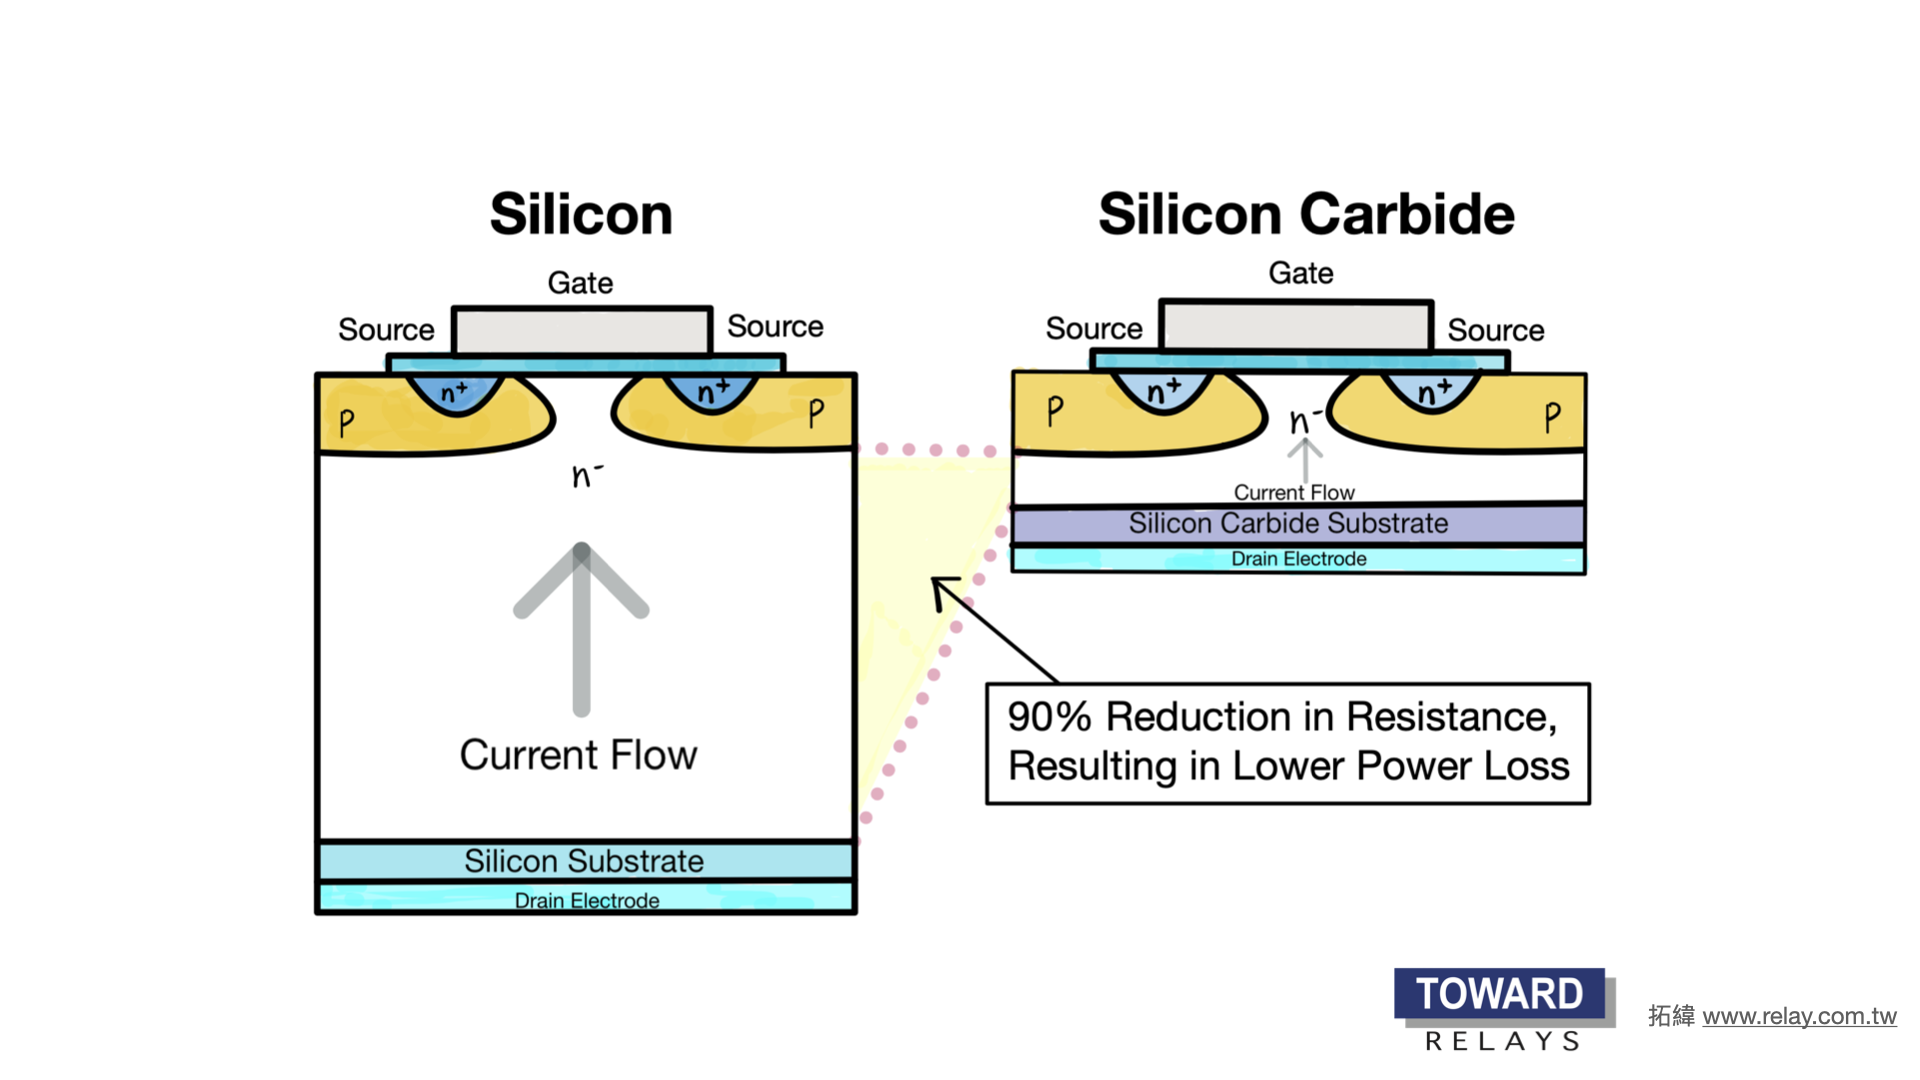 SiC es un semiconductor de banda ancha que puede soportar miles de voltios y altas temperaturas (más de 175C). Los componentes de SiC pueden funcionar eficientemente a frecuencias más altas sin pérdidas innecesarias como los IGBT y los MOSFET basados en Si. Además, el SiC tiene una menor resistencia en estado activo a voltajes más altos.